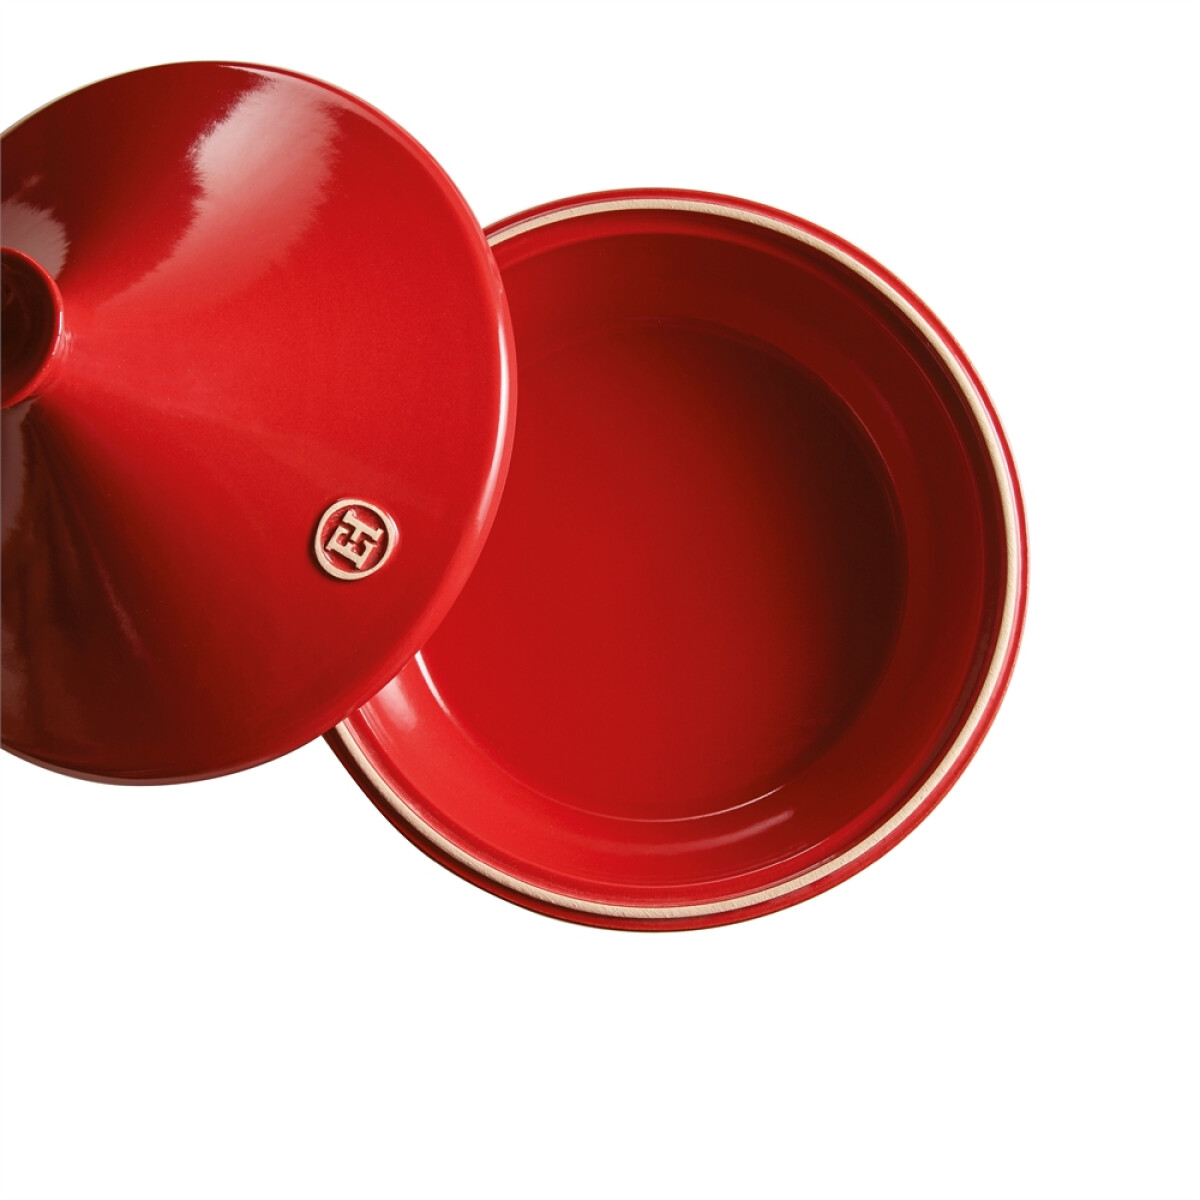 Керамичен тажин EMILE HENRY TAGINE, голям - Ø 32 см, цвят червен